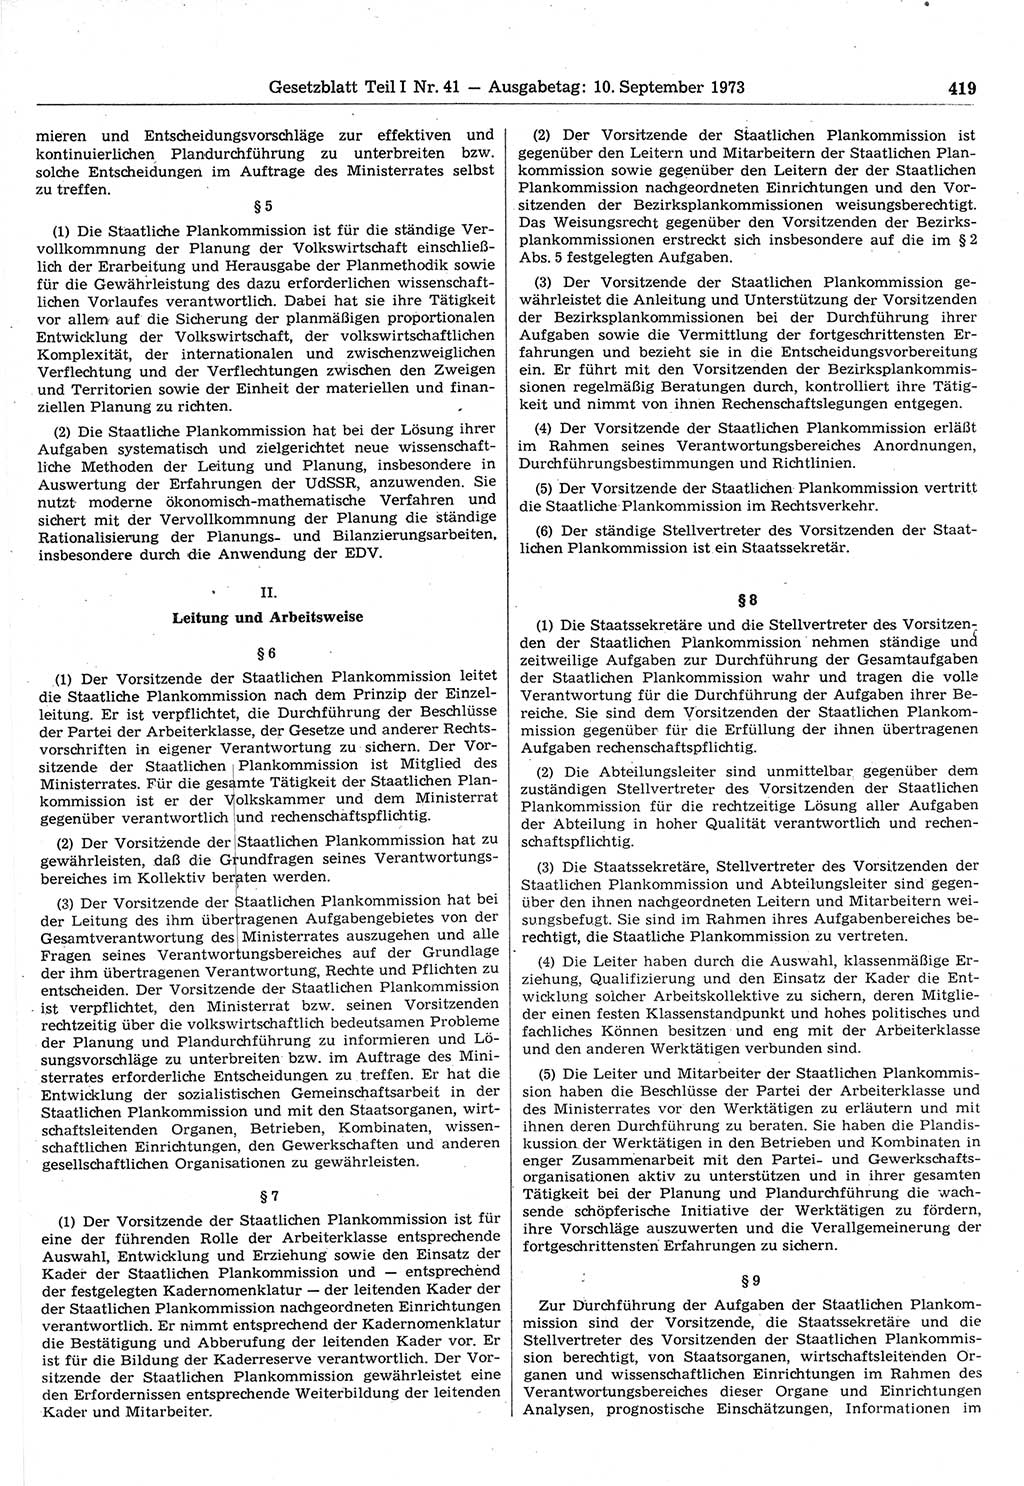 Gesetzblatt (GBl.) der Deutschen Demokratischen Republik (DDR) Teil Ⅰ 1973, Seite 419 (GBl. DDR Ⅰ 1973, S. 419)